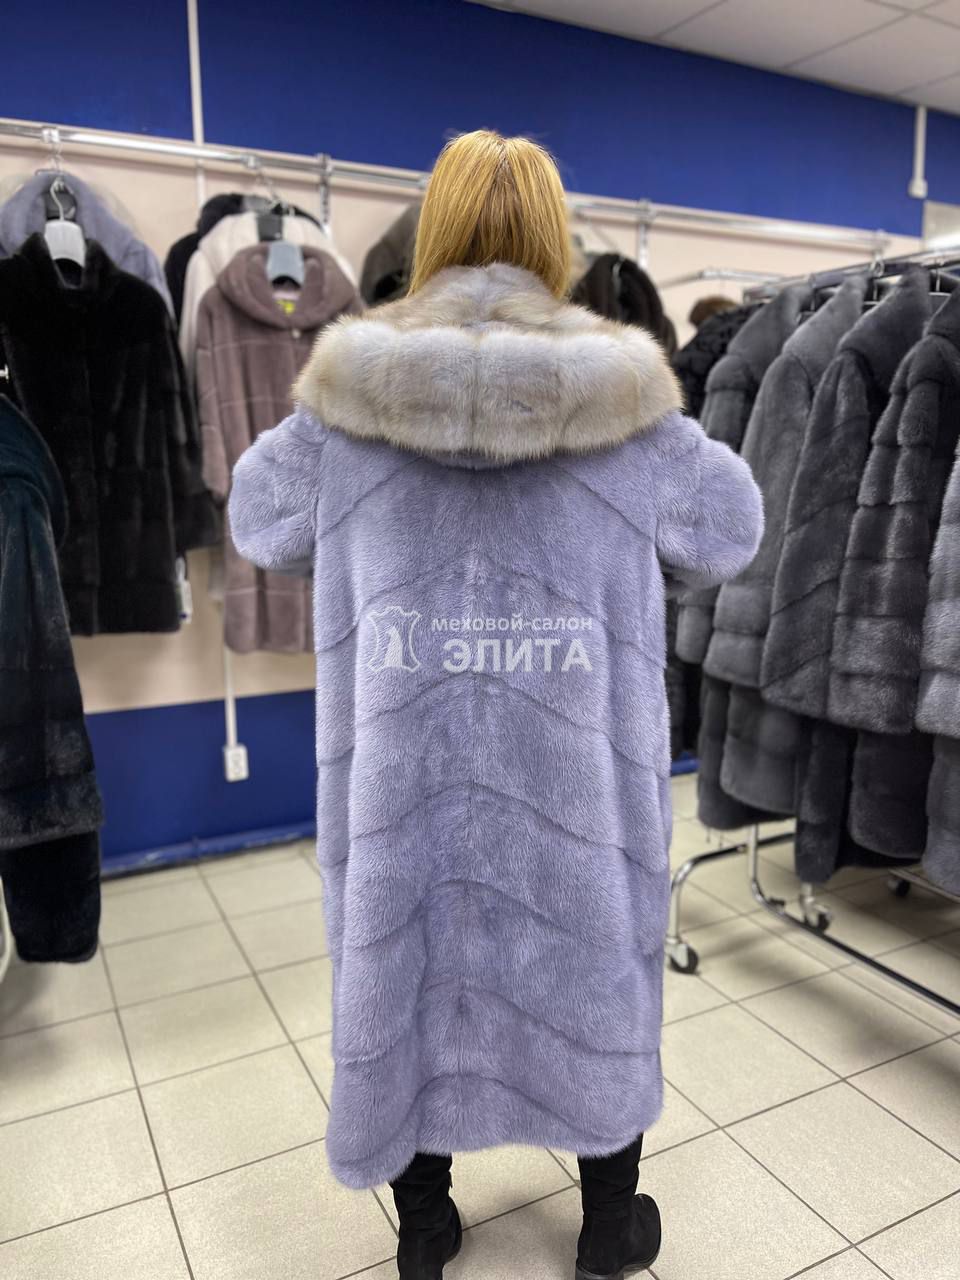 Пальто из норки м. S18237, р-р 52-54, цена 208250 рублей в интернет-магазине кожи и меха ЭЛИТА. Вид 2